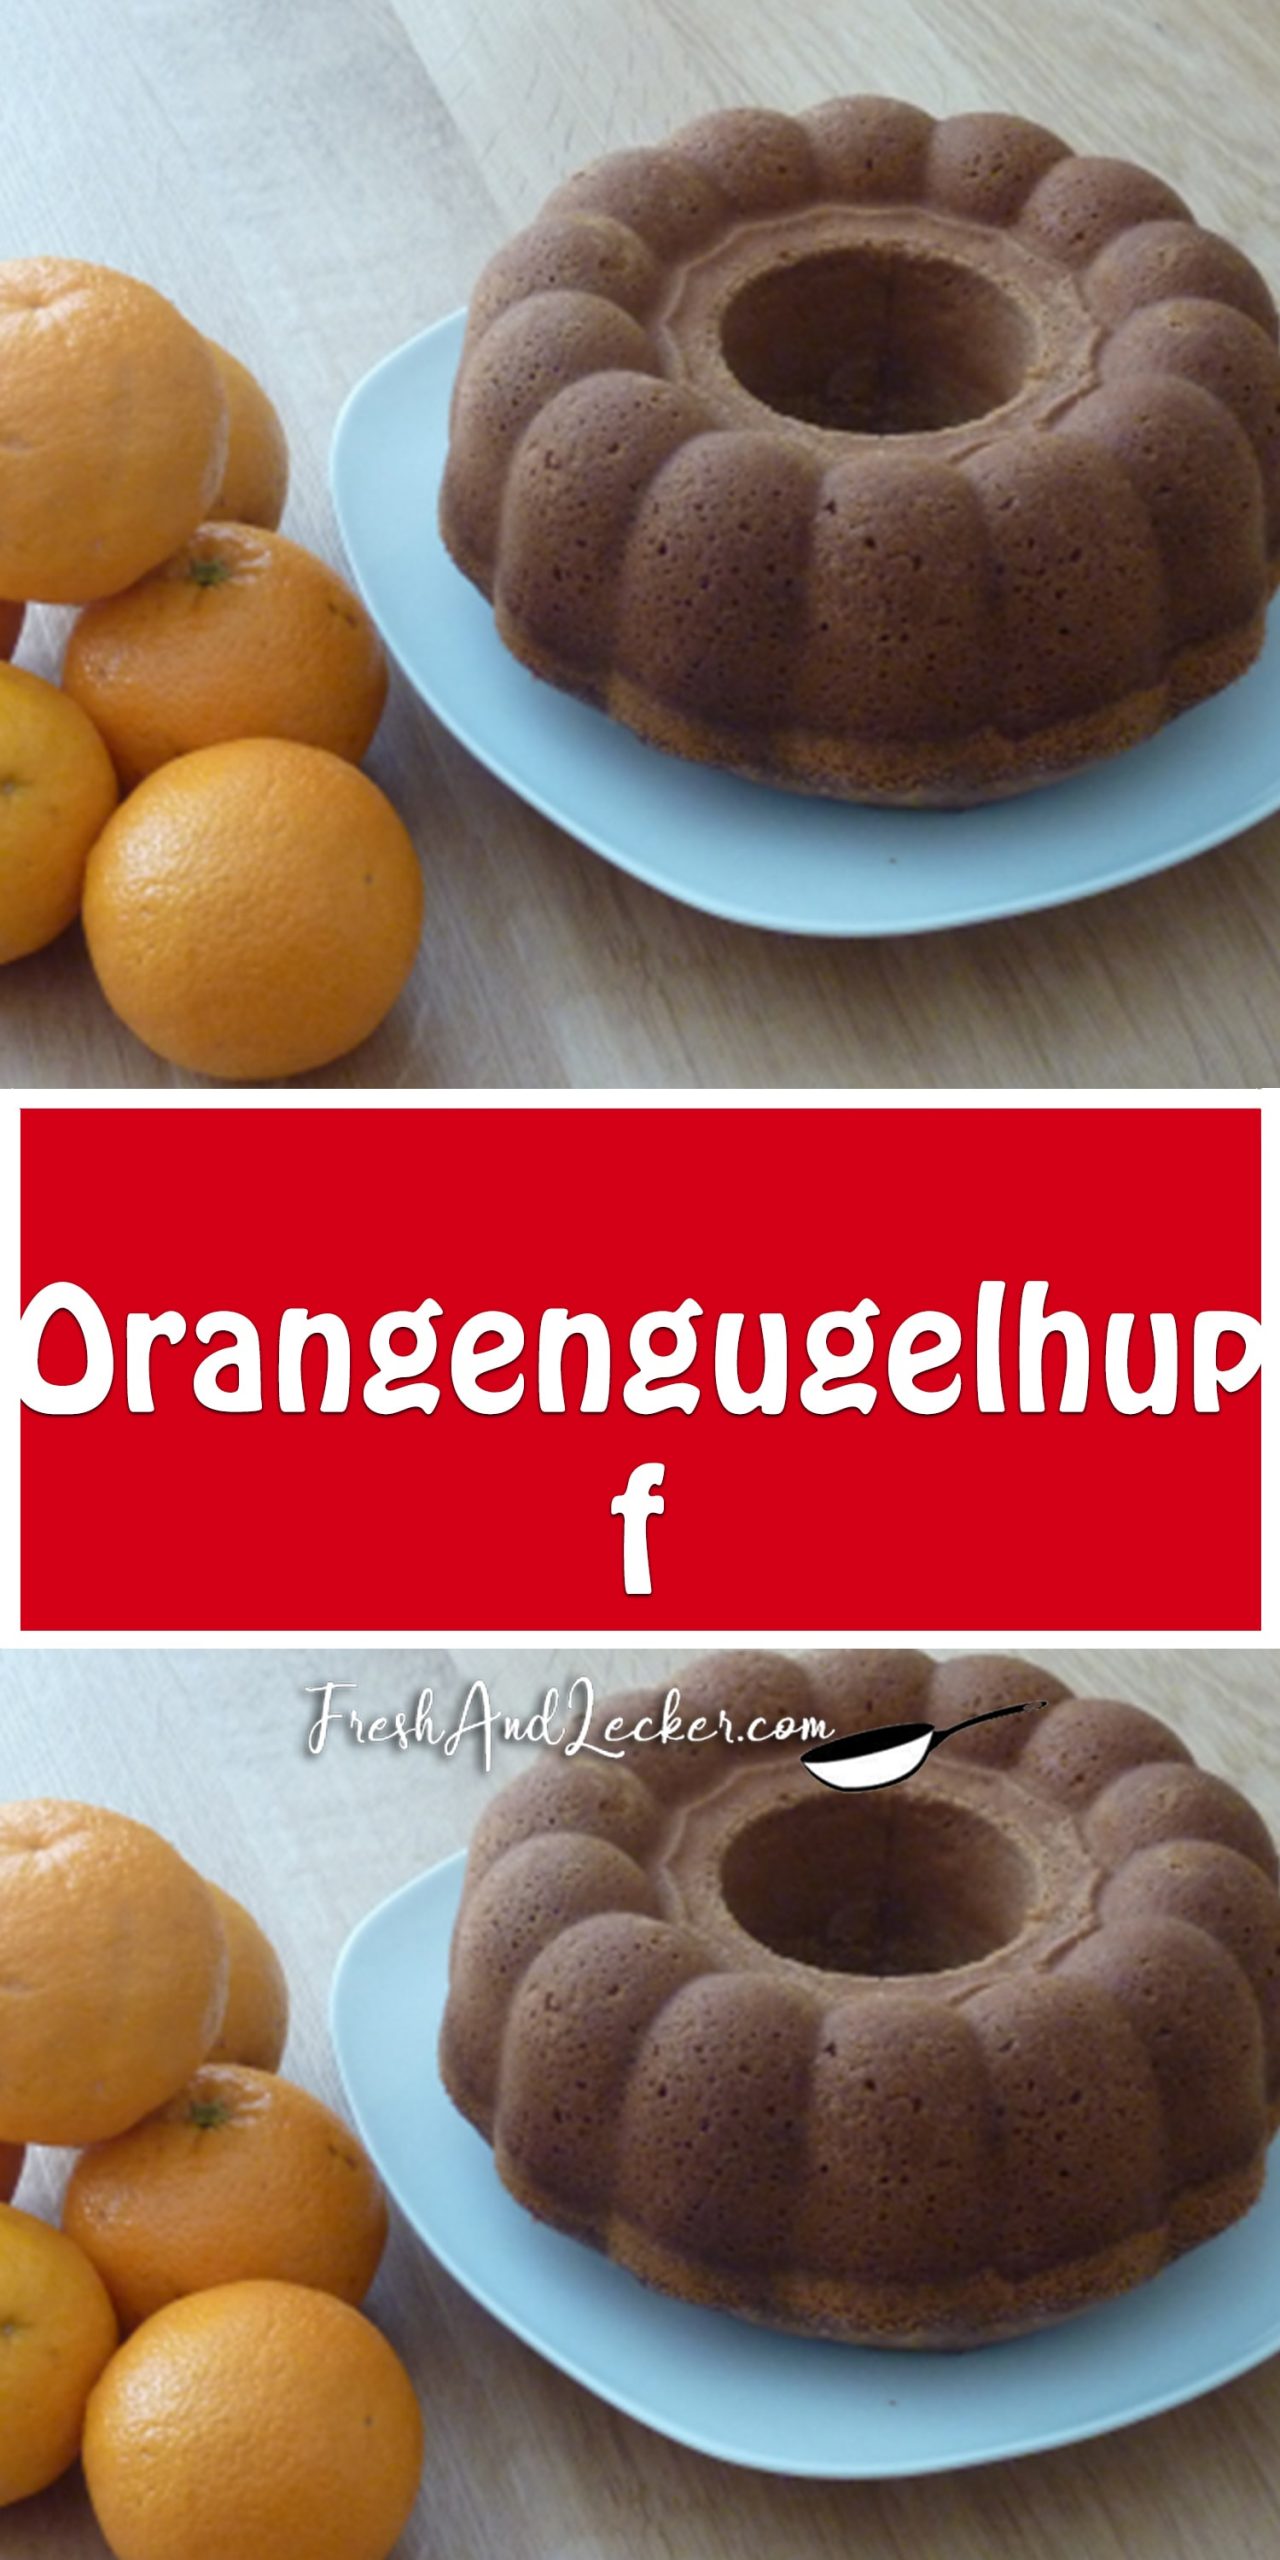 Orangengugelhupf - Fresh Lecker